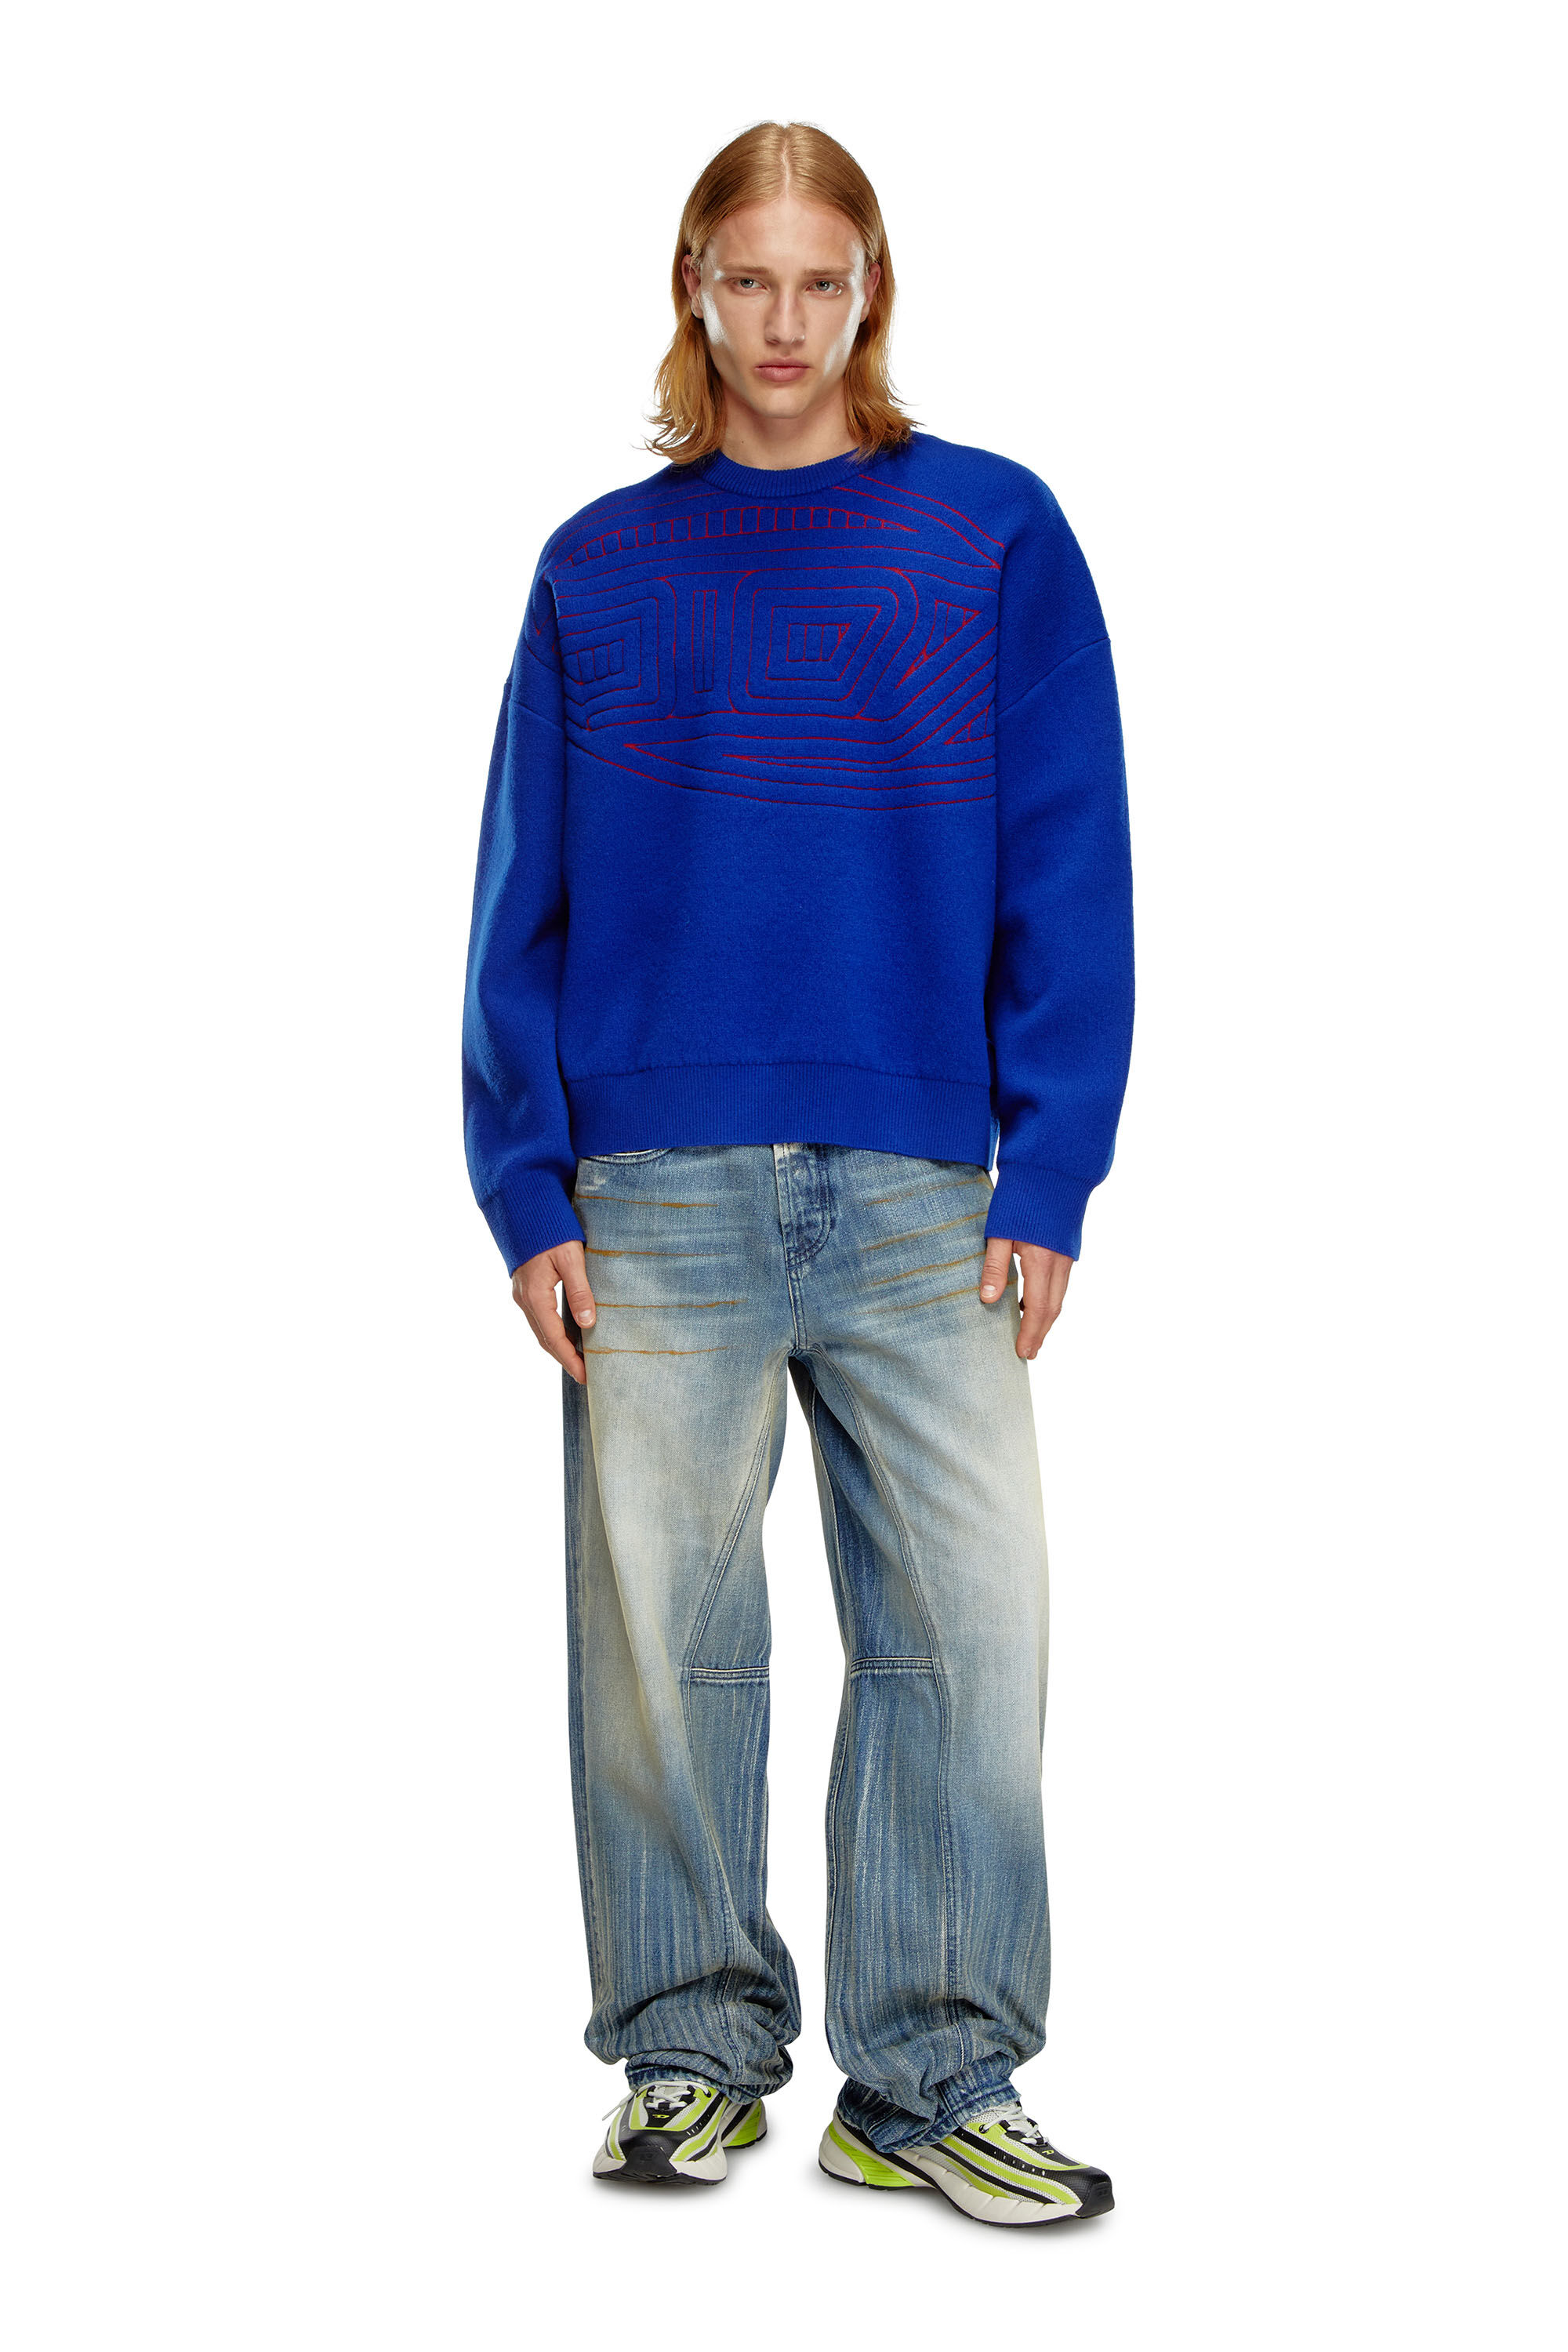 Diesel - K-RATIO, Hombre Jersey de mezcla de lana con logotipo gráfico in Azul marino - Image 1